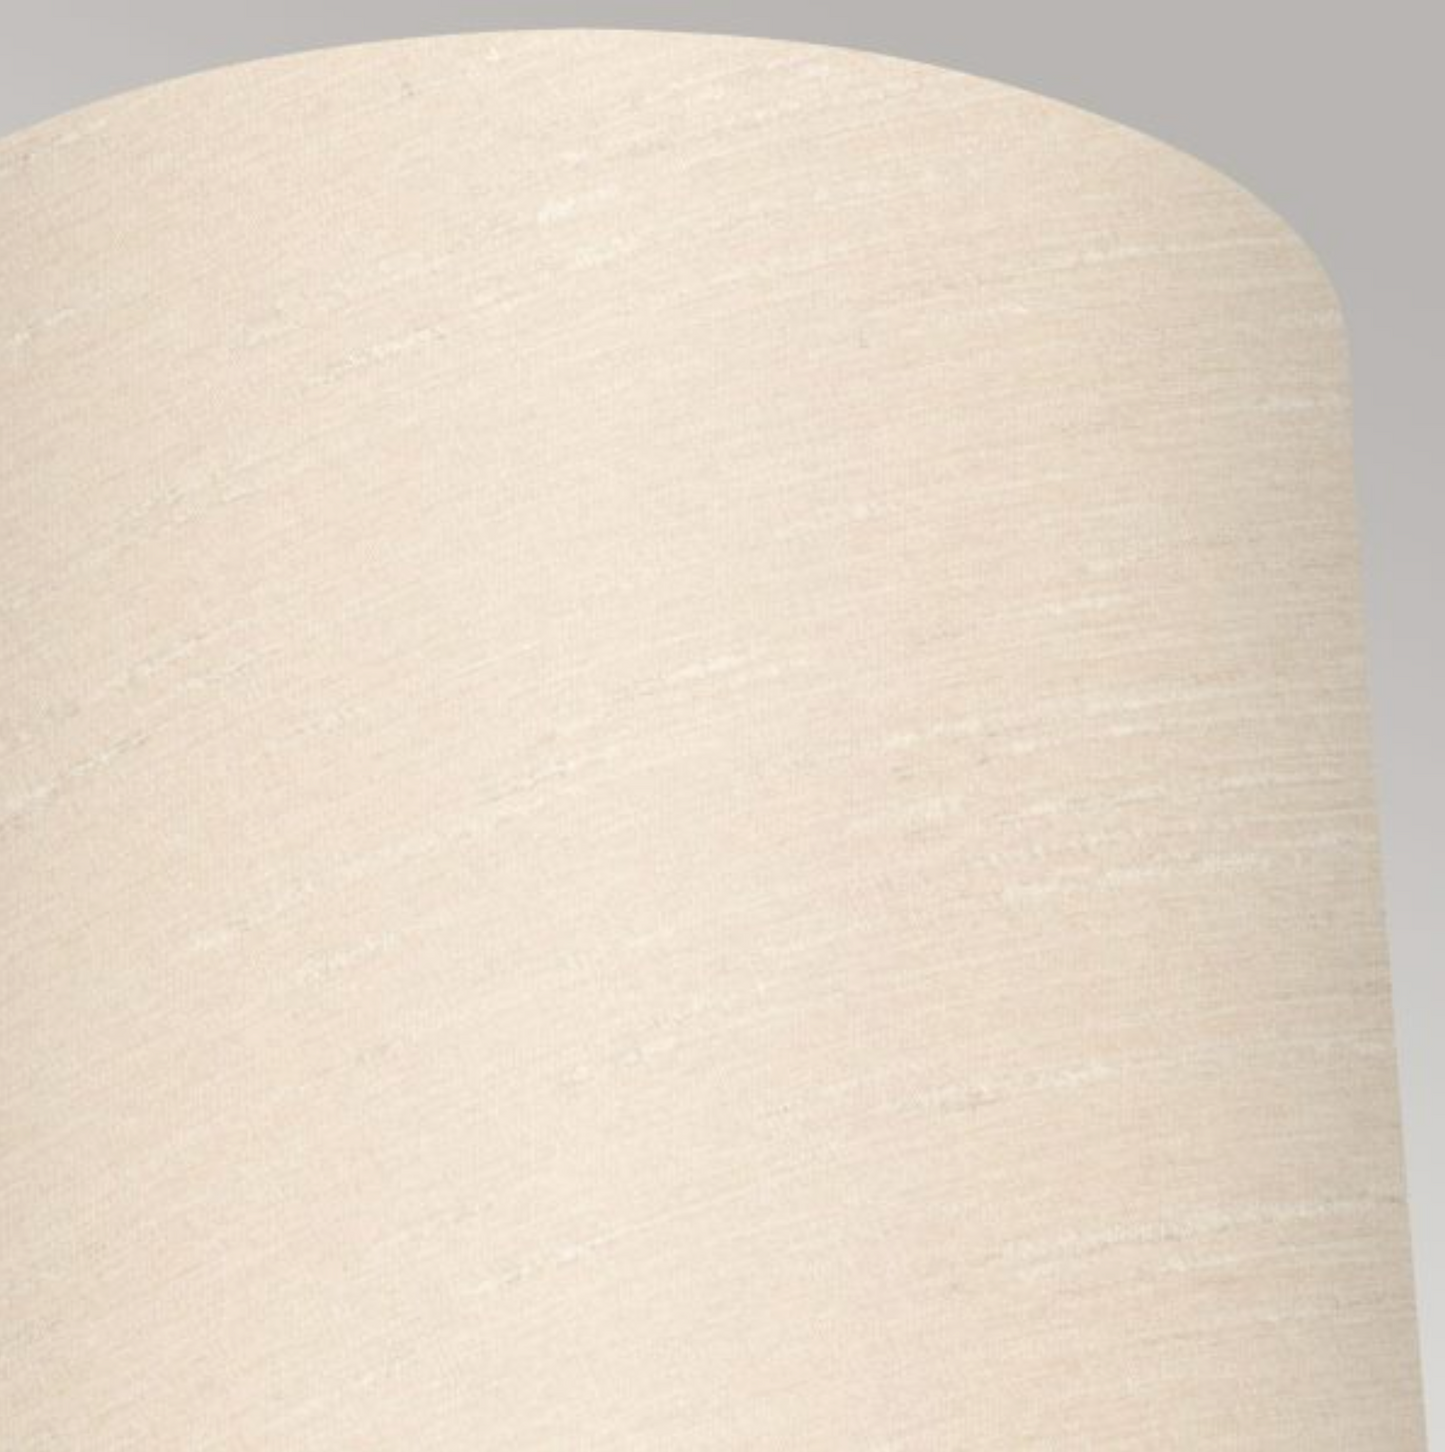 FEL Elegant Curved Arm Polished Chrome Bathroom Wall Light With Scallop Faux Silk Shade - ID 12593